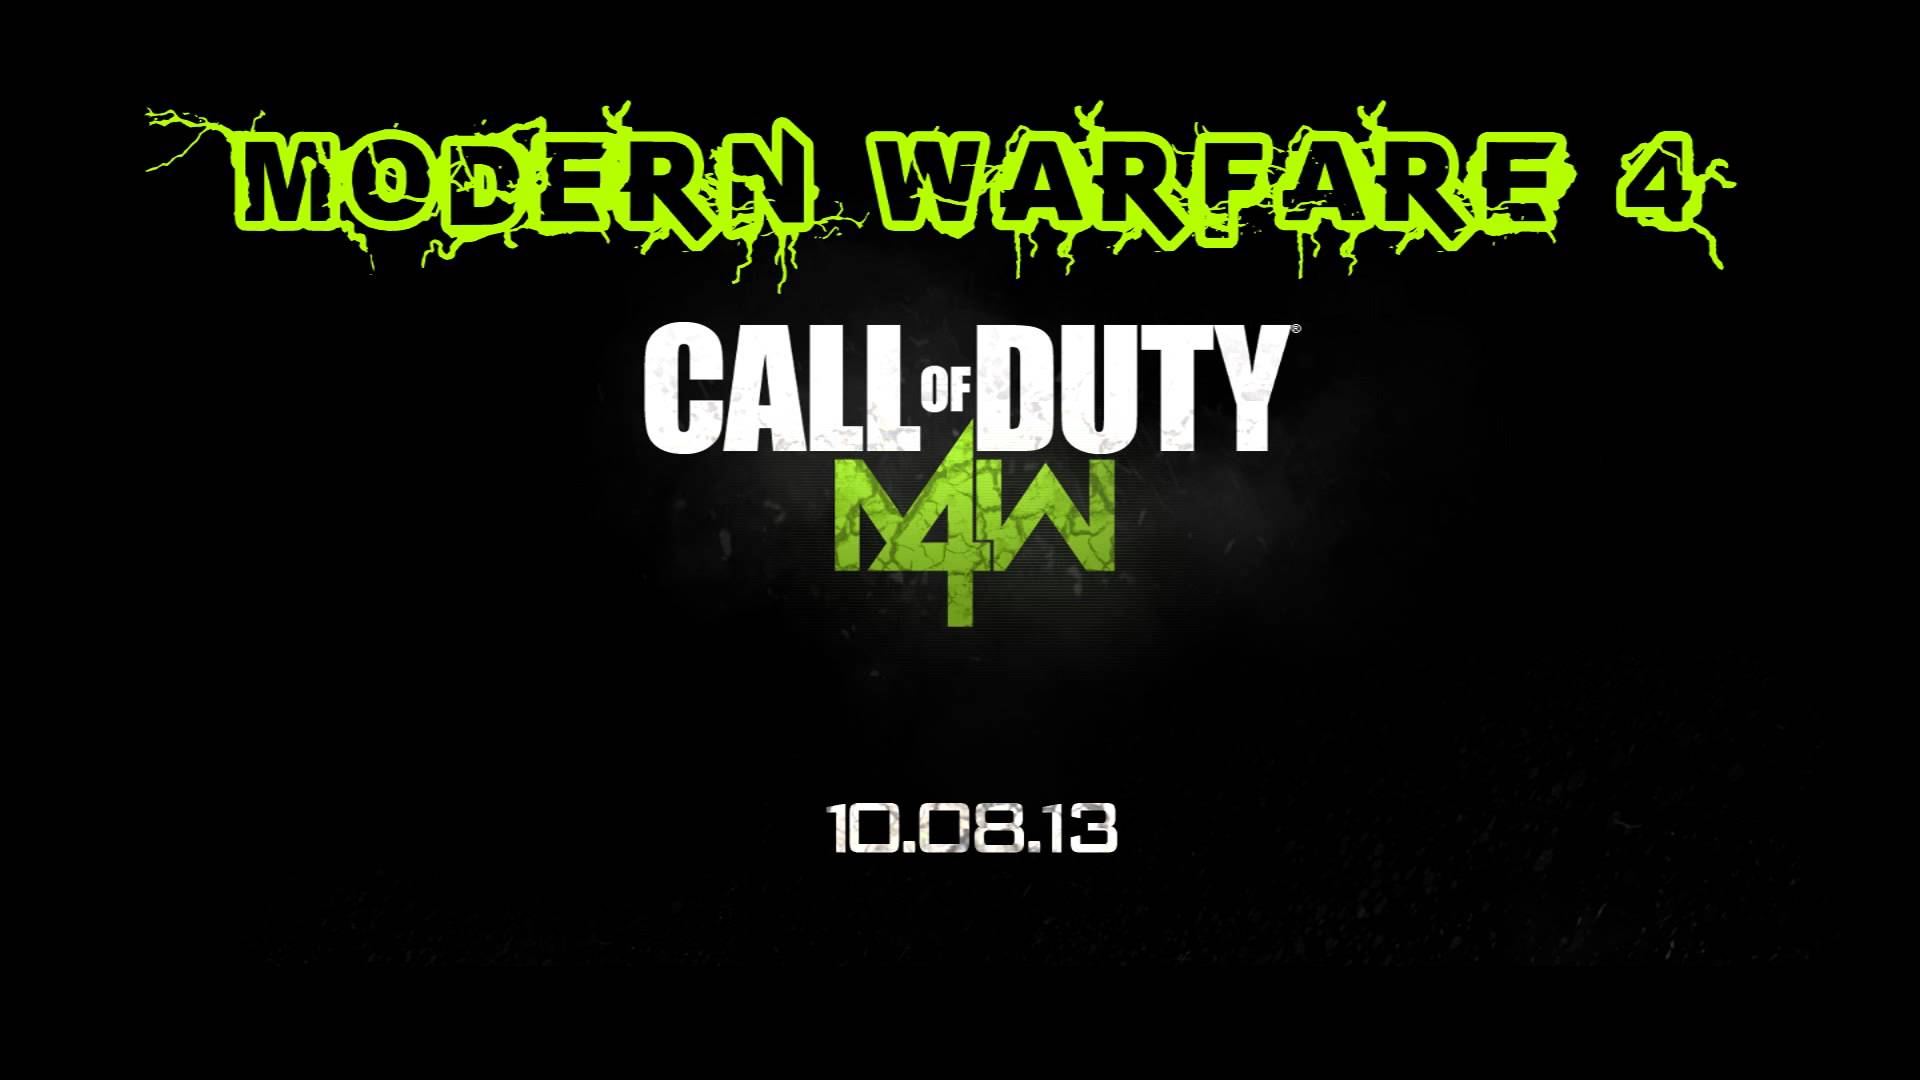 Call of duty modern warfare 4 #6921106